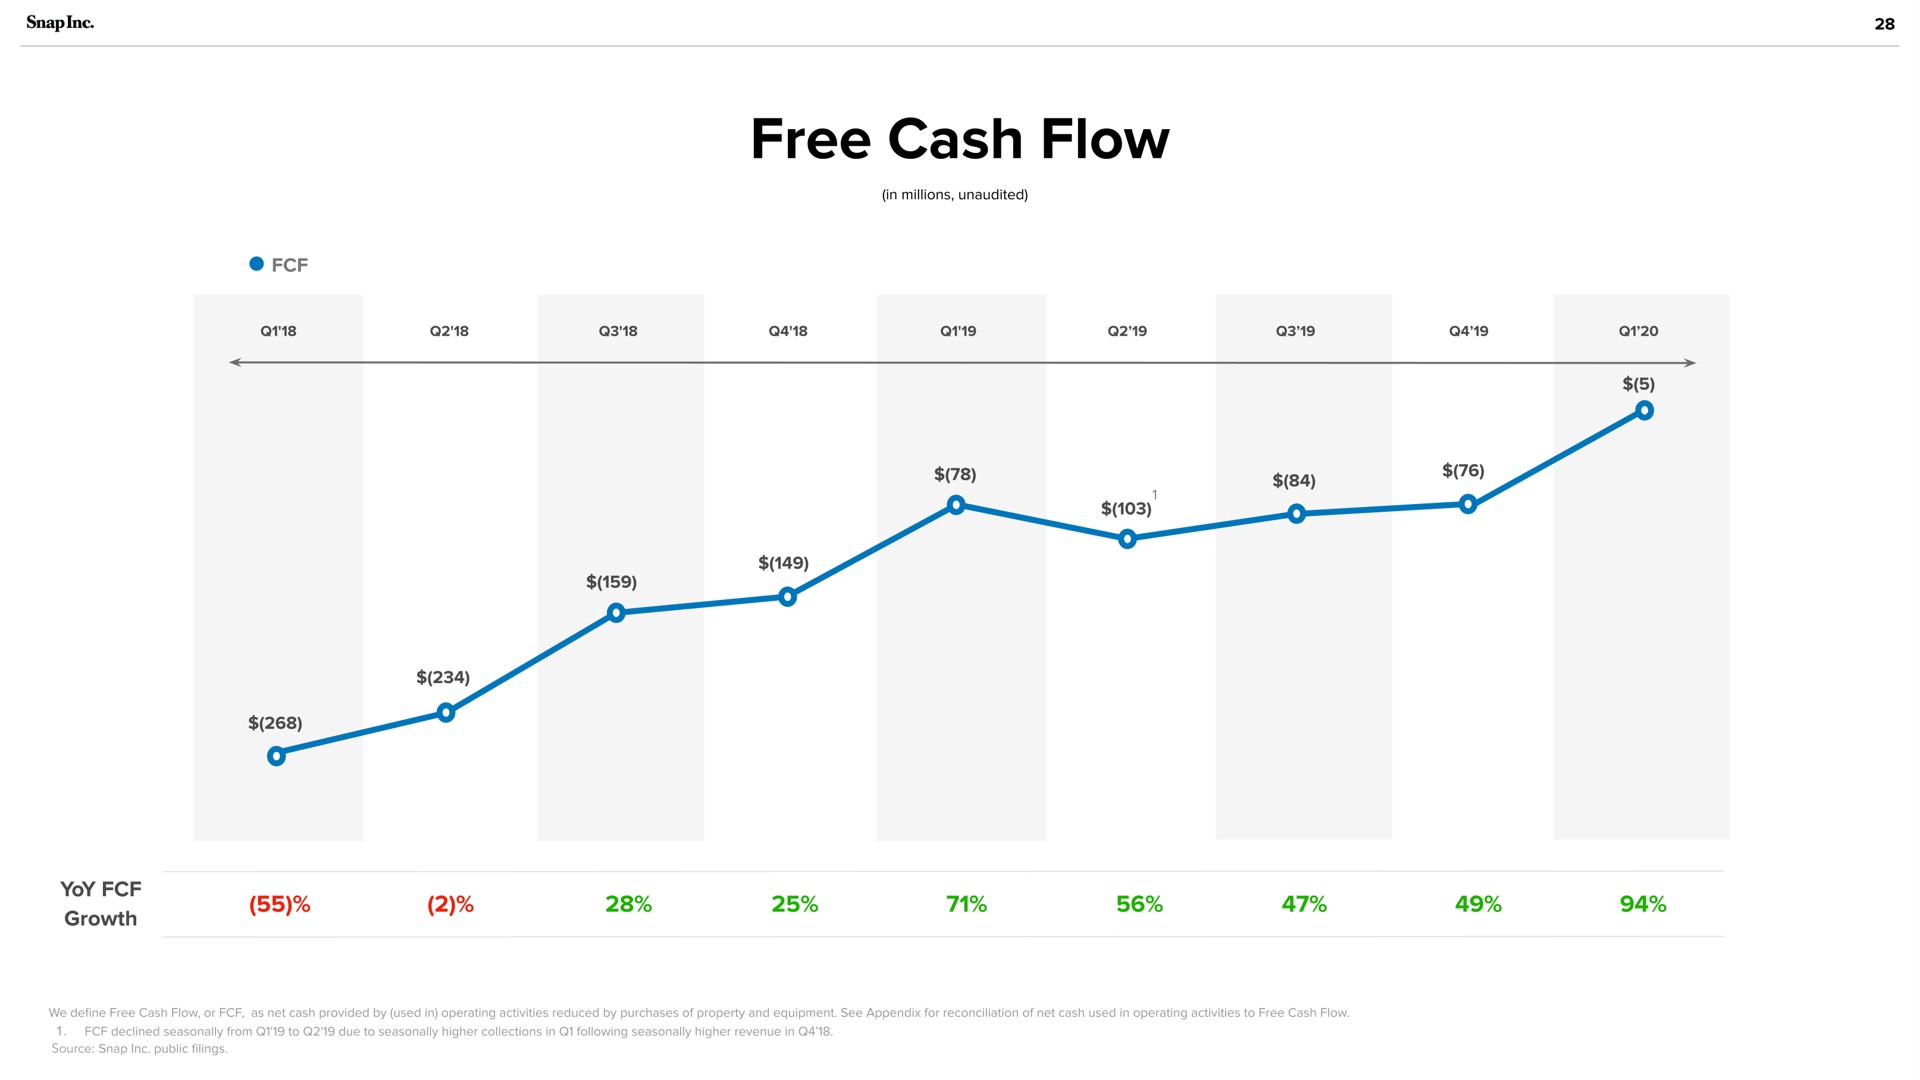 source free cash flow | Snap Inc